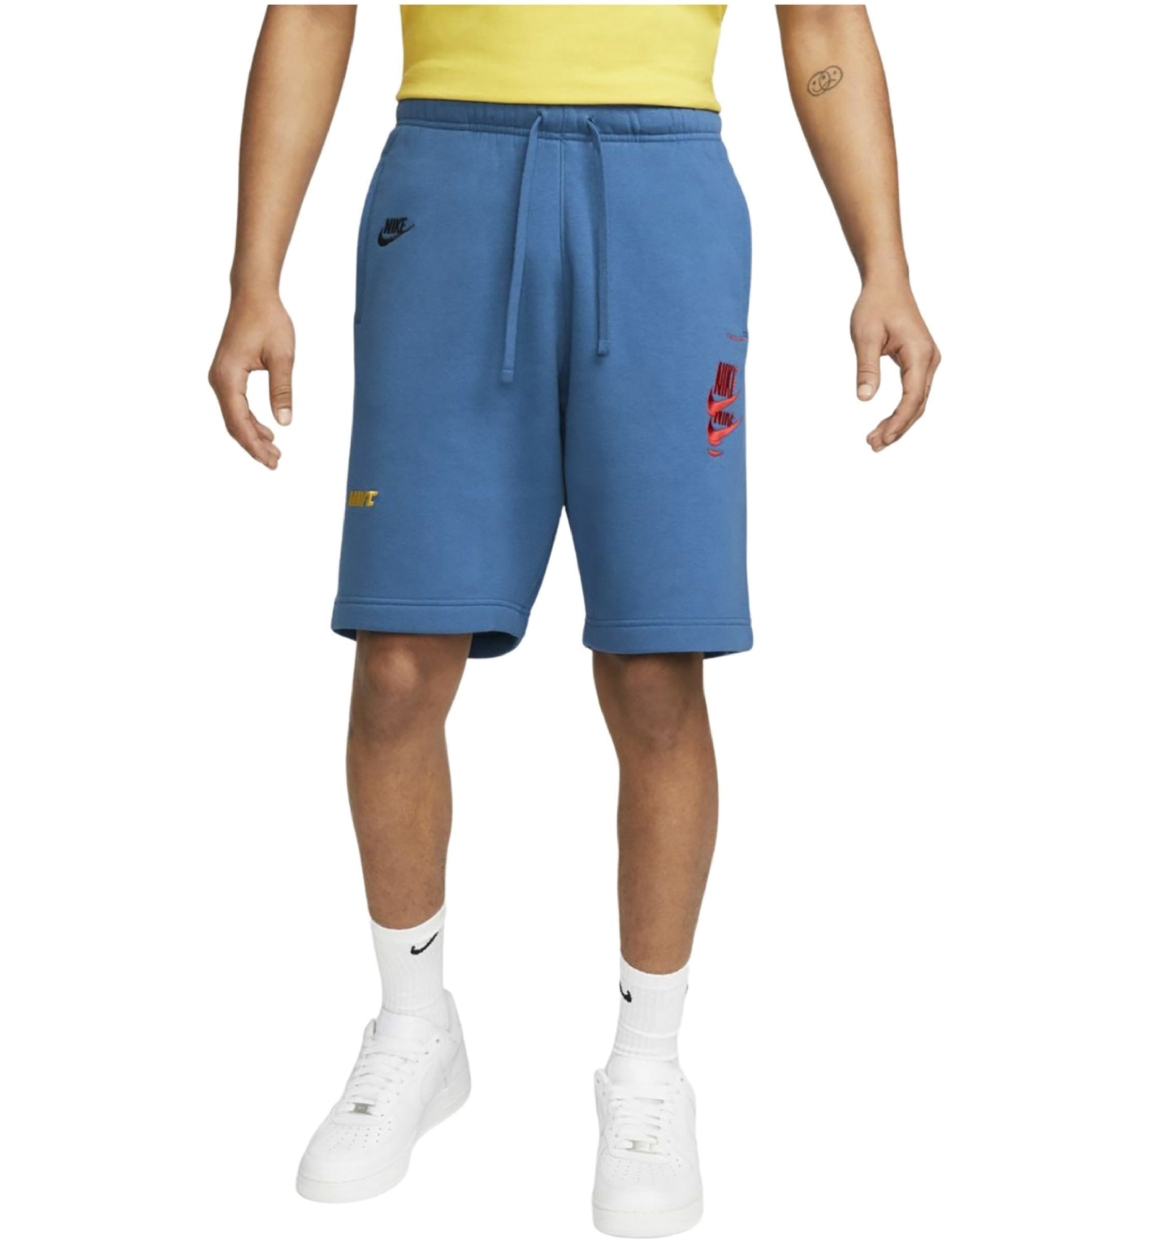 Спортивные шорты мужские Nike Spe+ Ft Short Mfta, DM6877-407, размер L